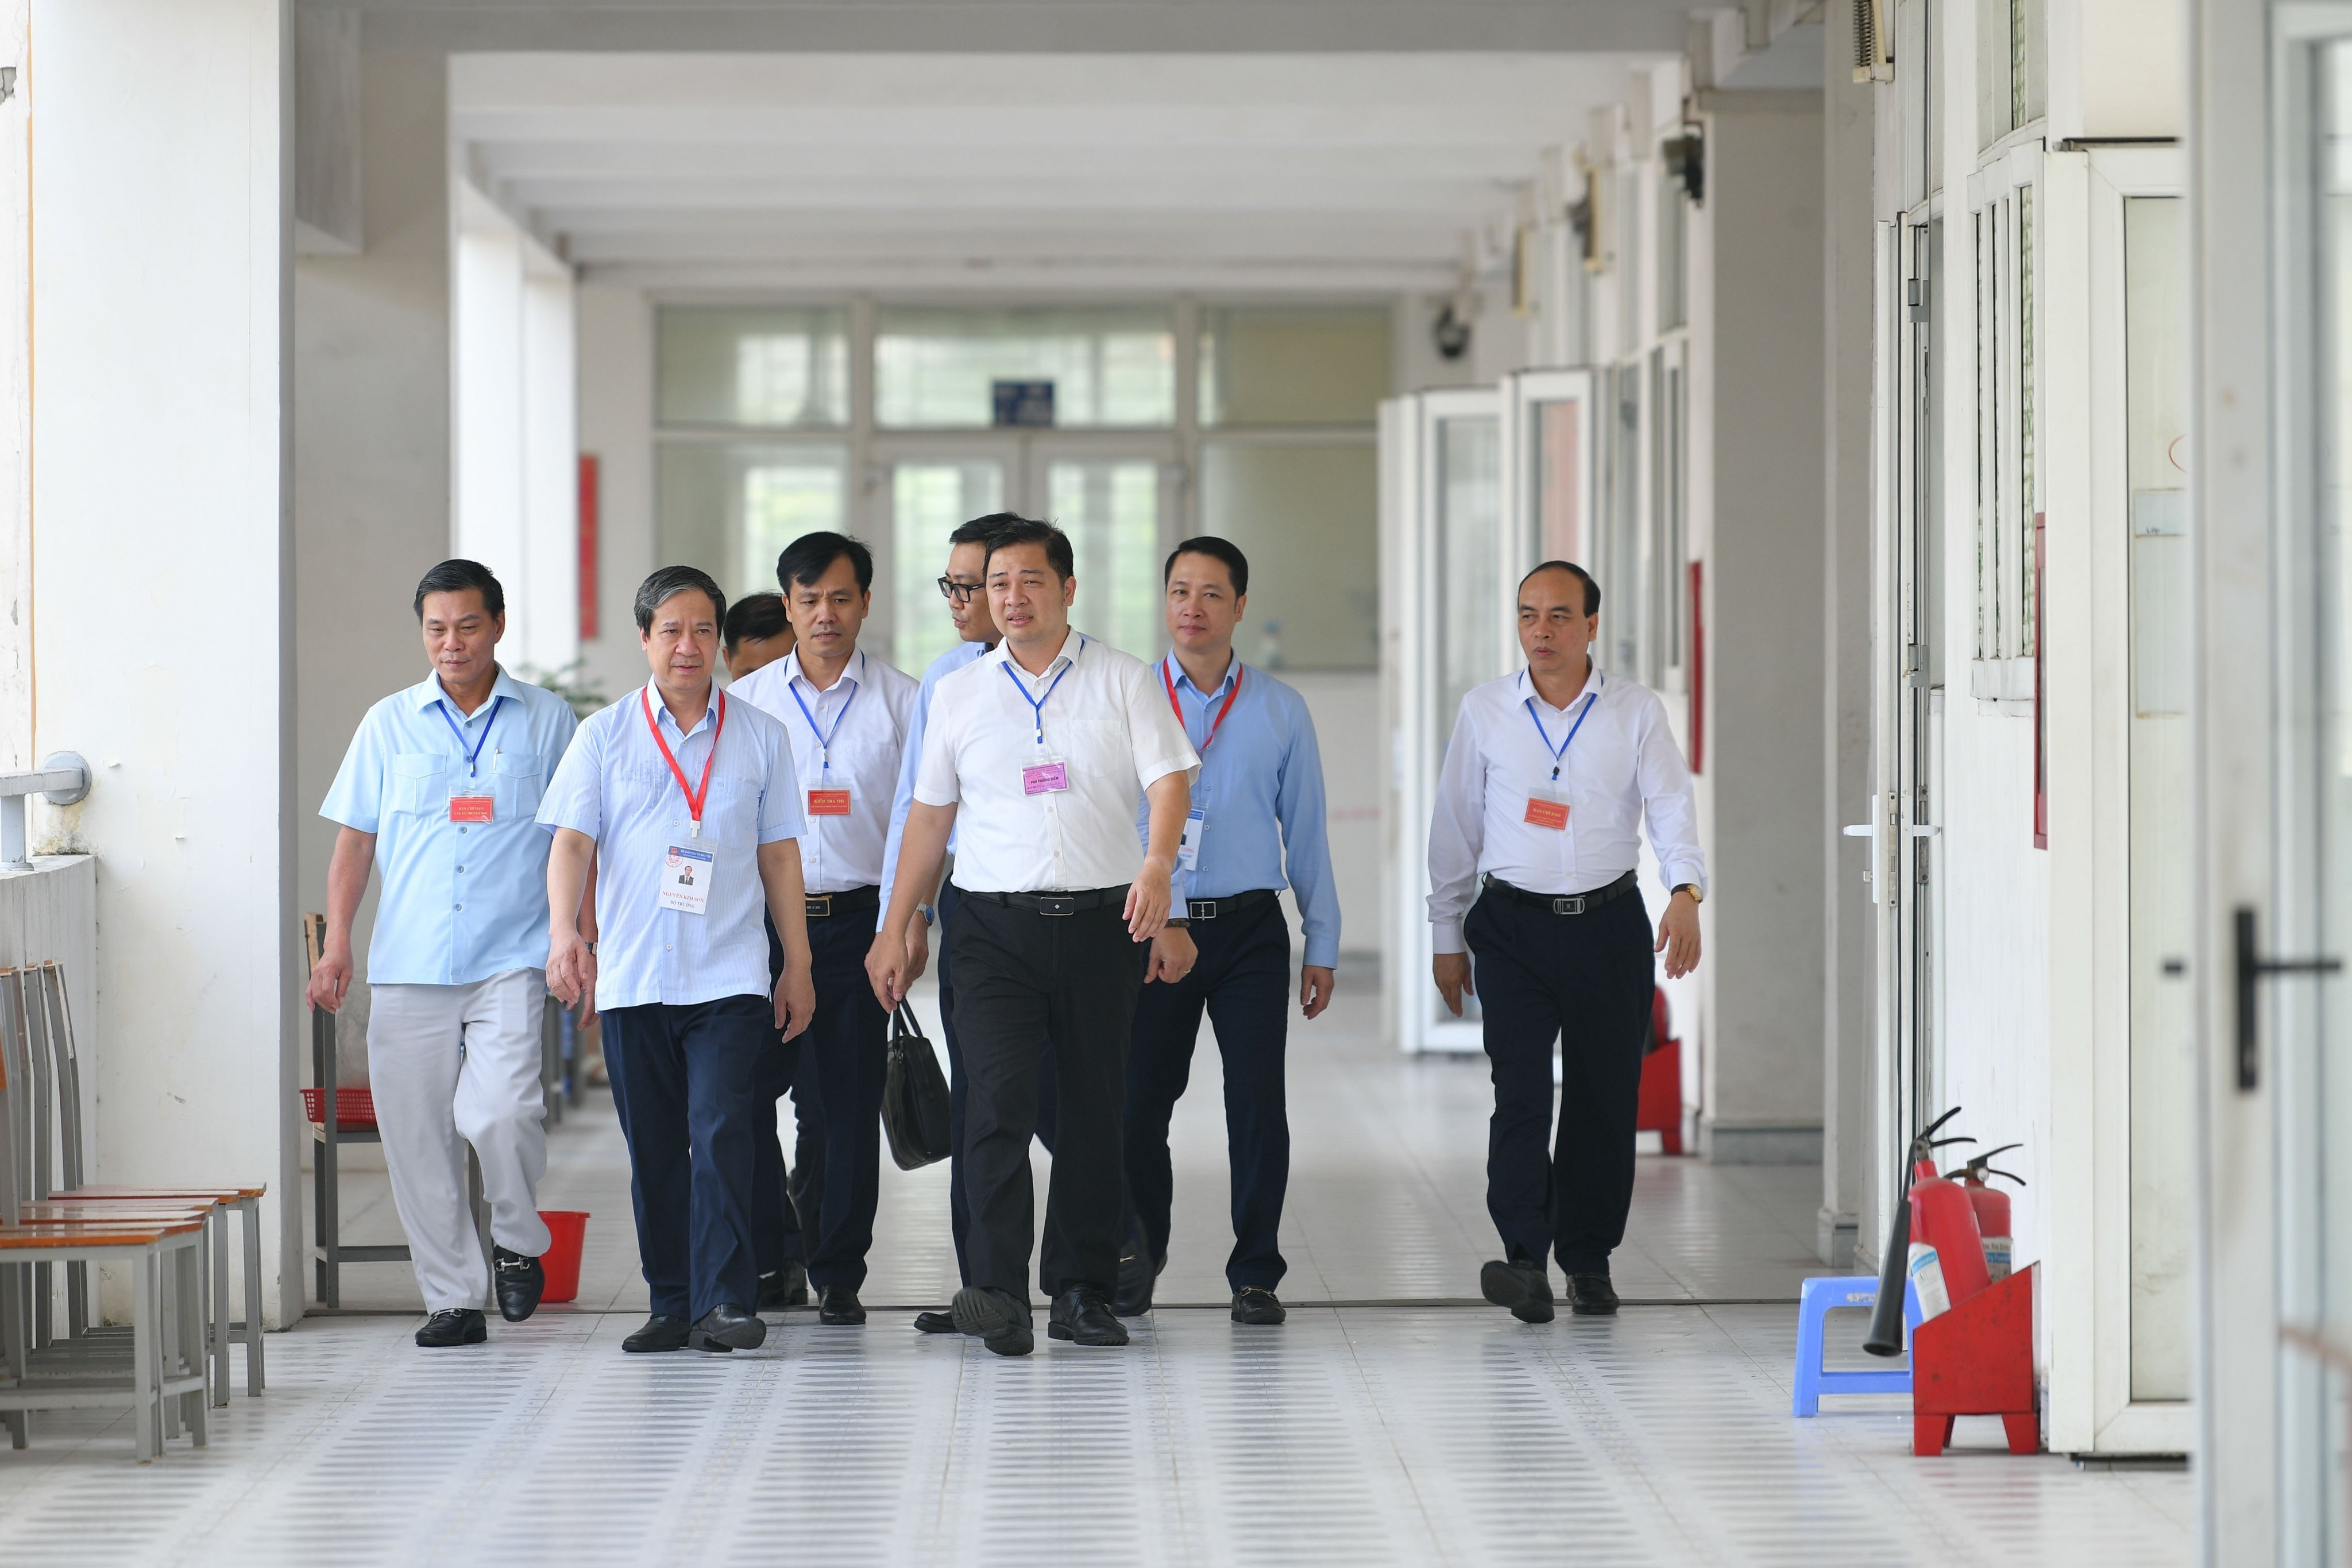 Bộ trưởng Nguyễn Kim Sơn và đoàn công tác kiểm tra công tác coi thi tốt nghiệp THPT tại điểm thi Trường THPT chuyên Trần Phú, Hải Phòng.